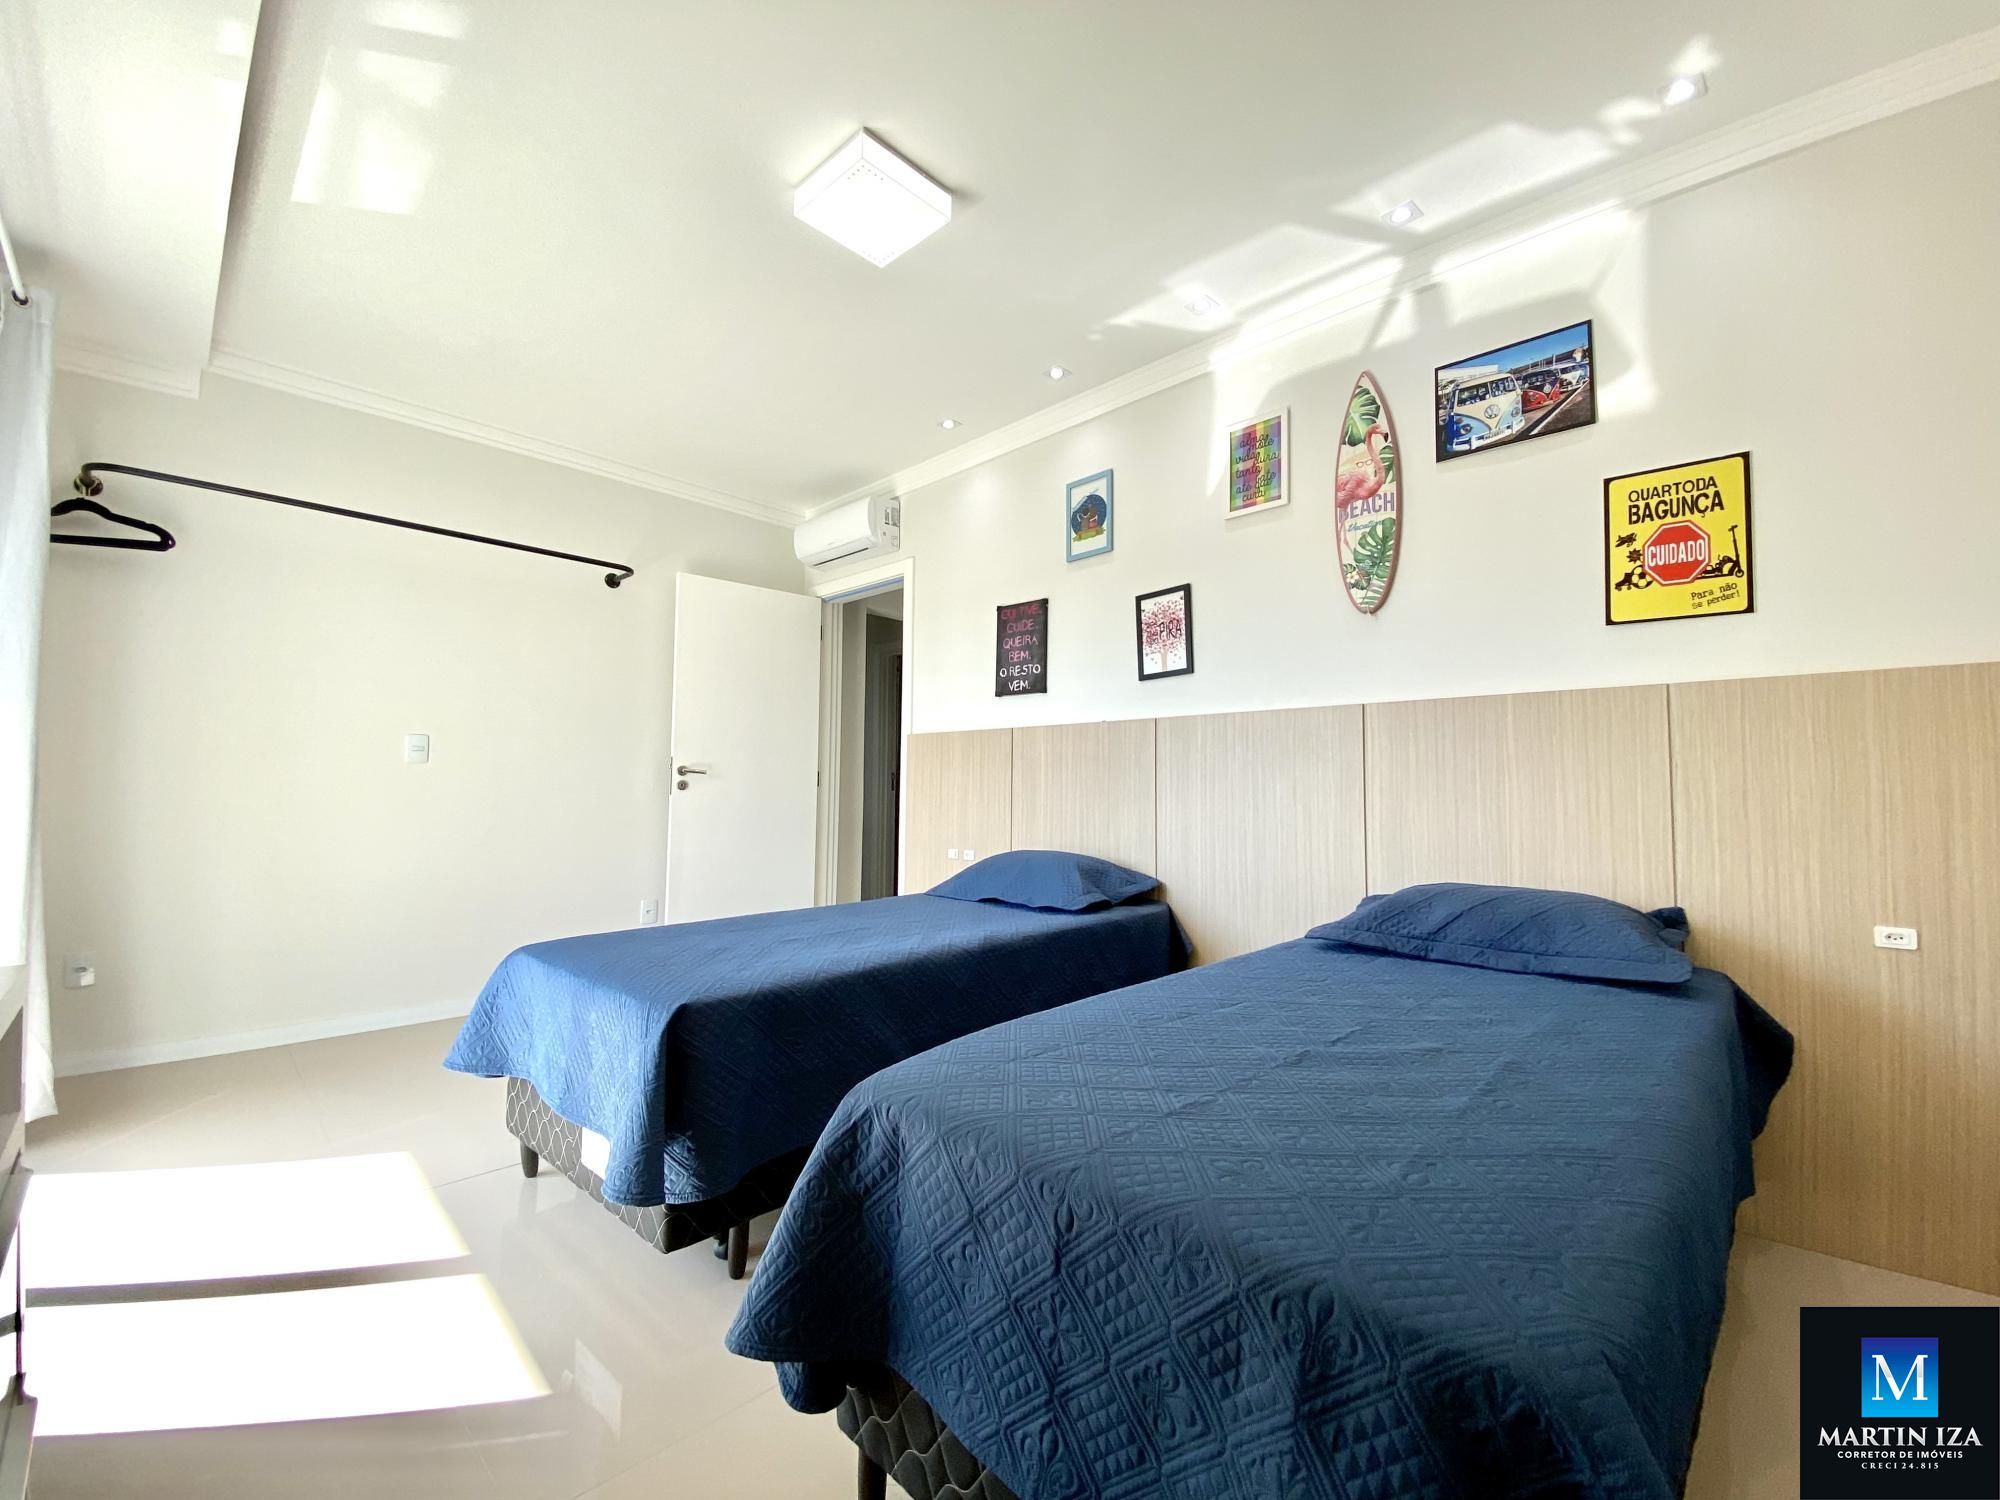 Cobertura com 3 Dormitórios para alugar, 160 m² por R$ 650,00